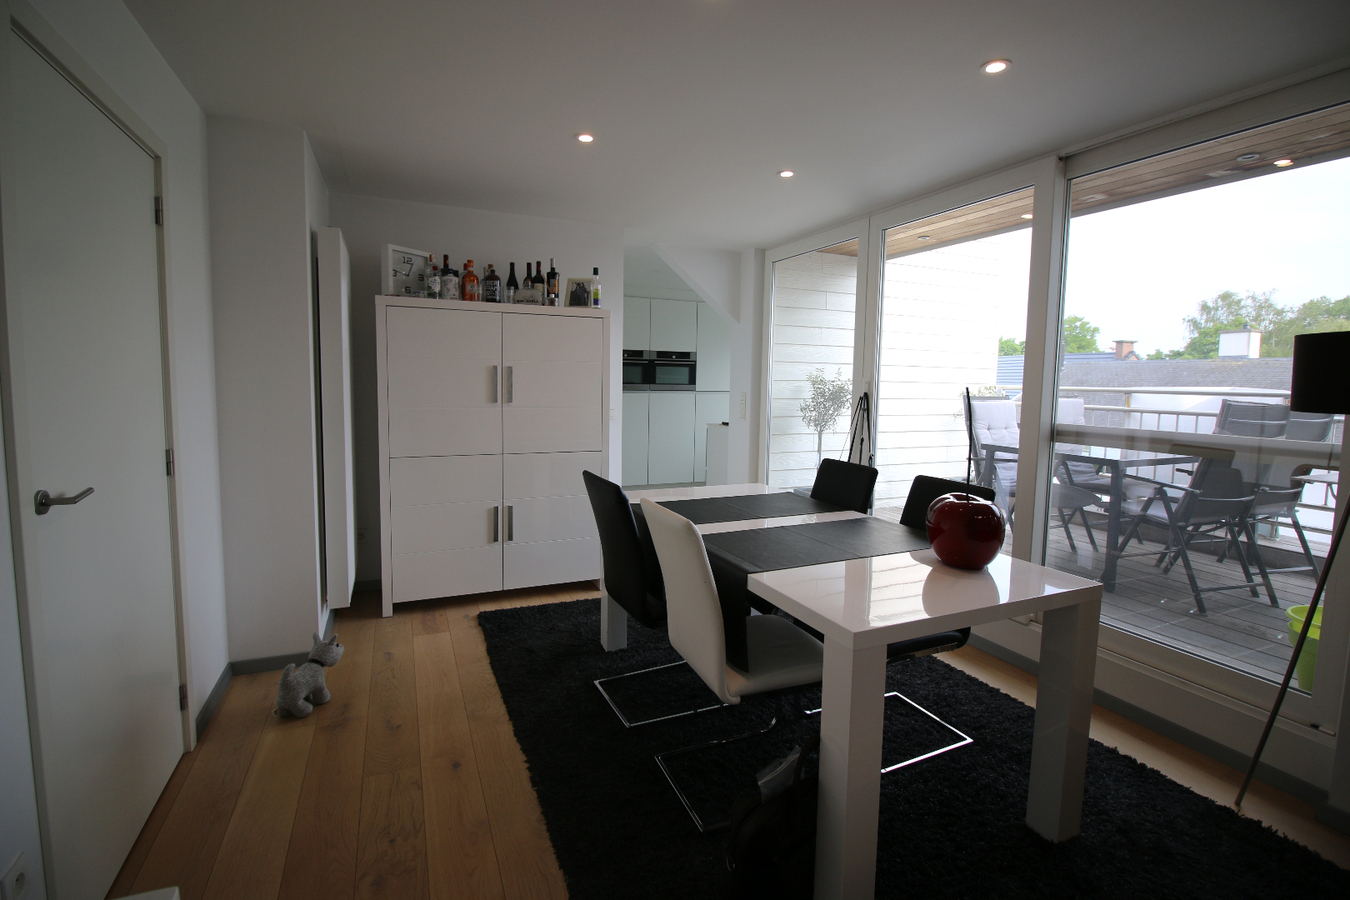 Recent appartement in centrum Zomergem! 